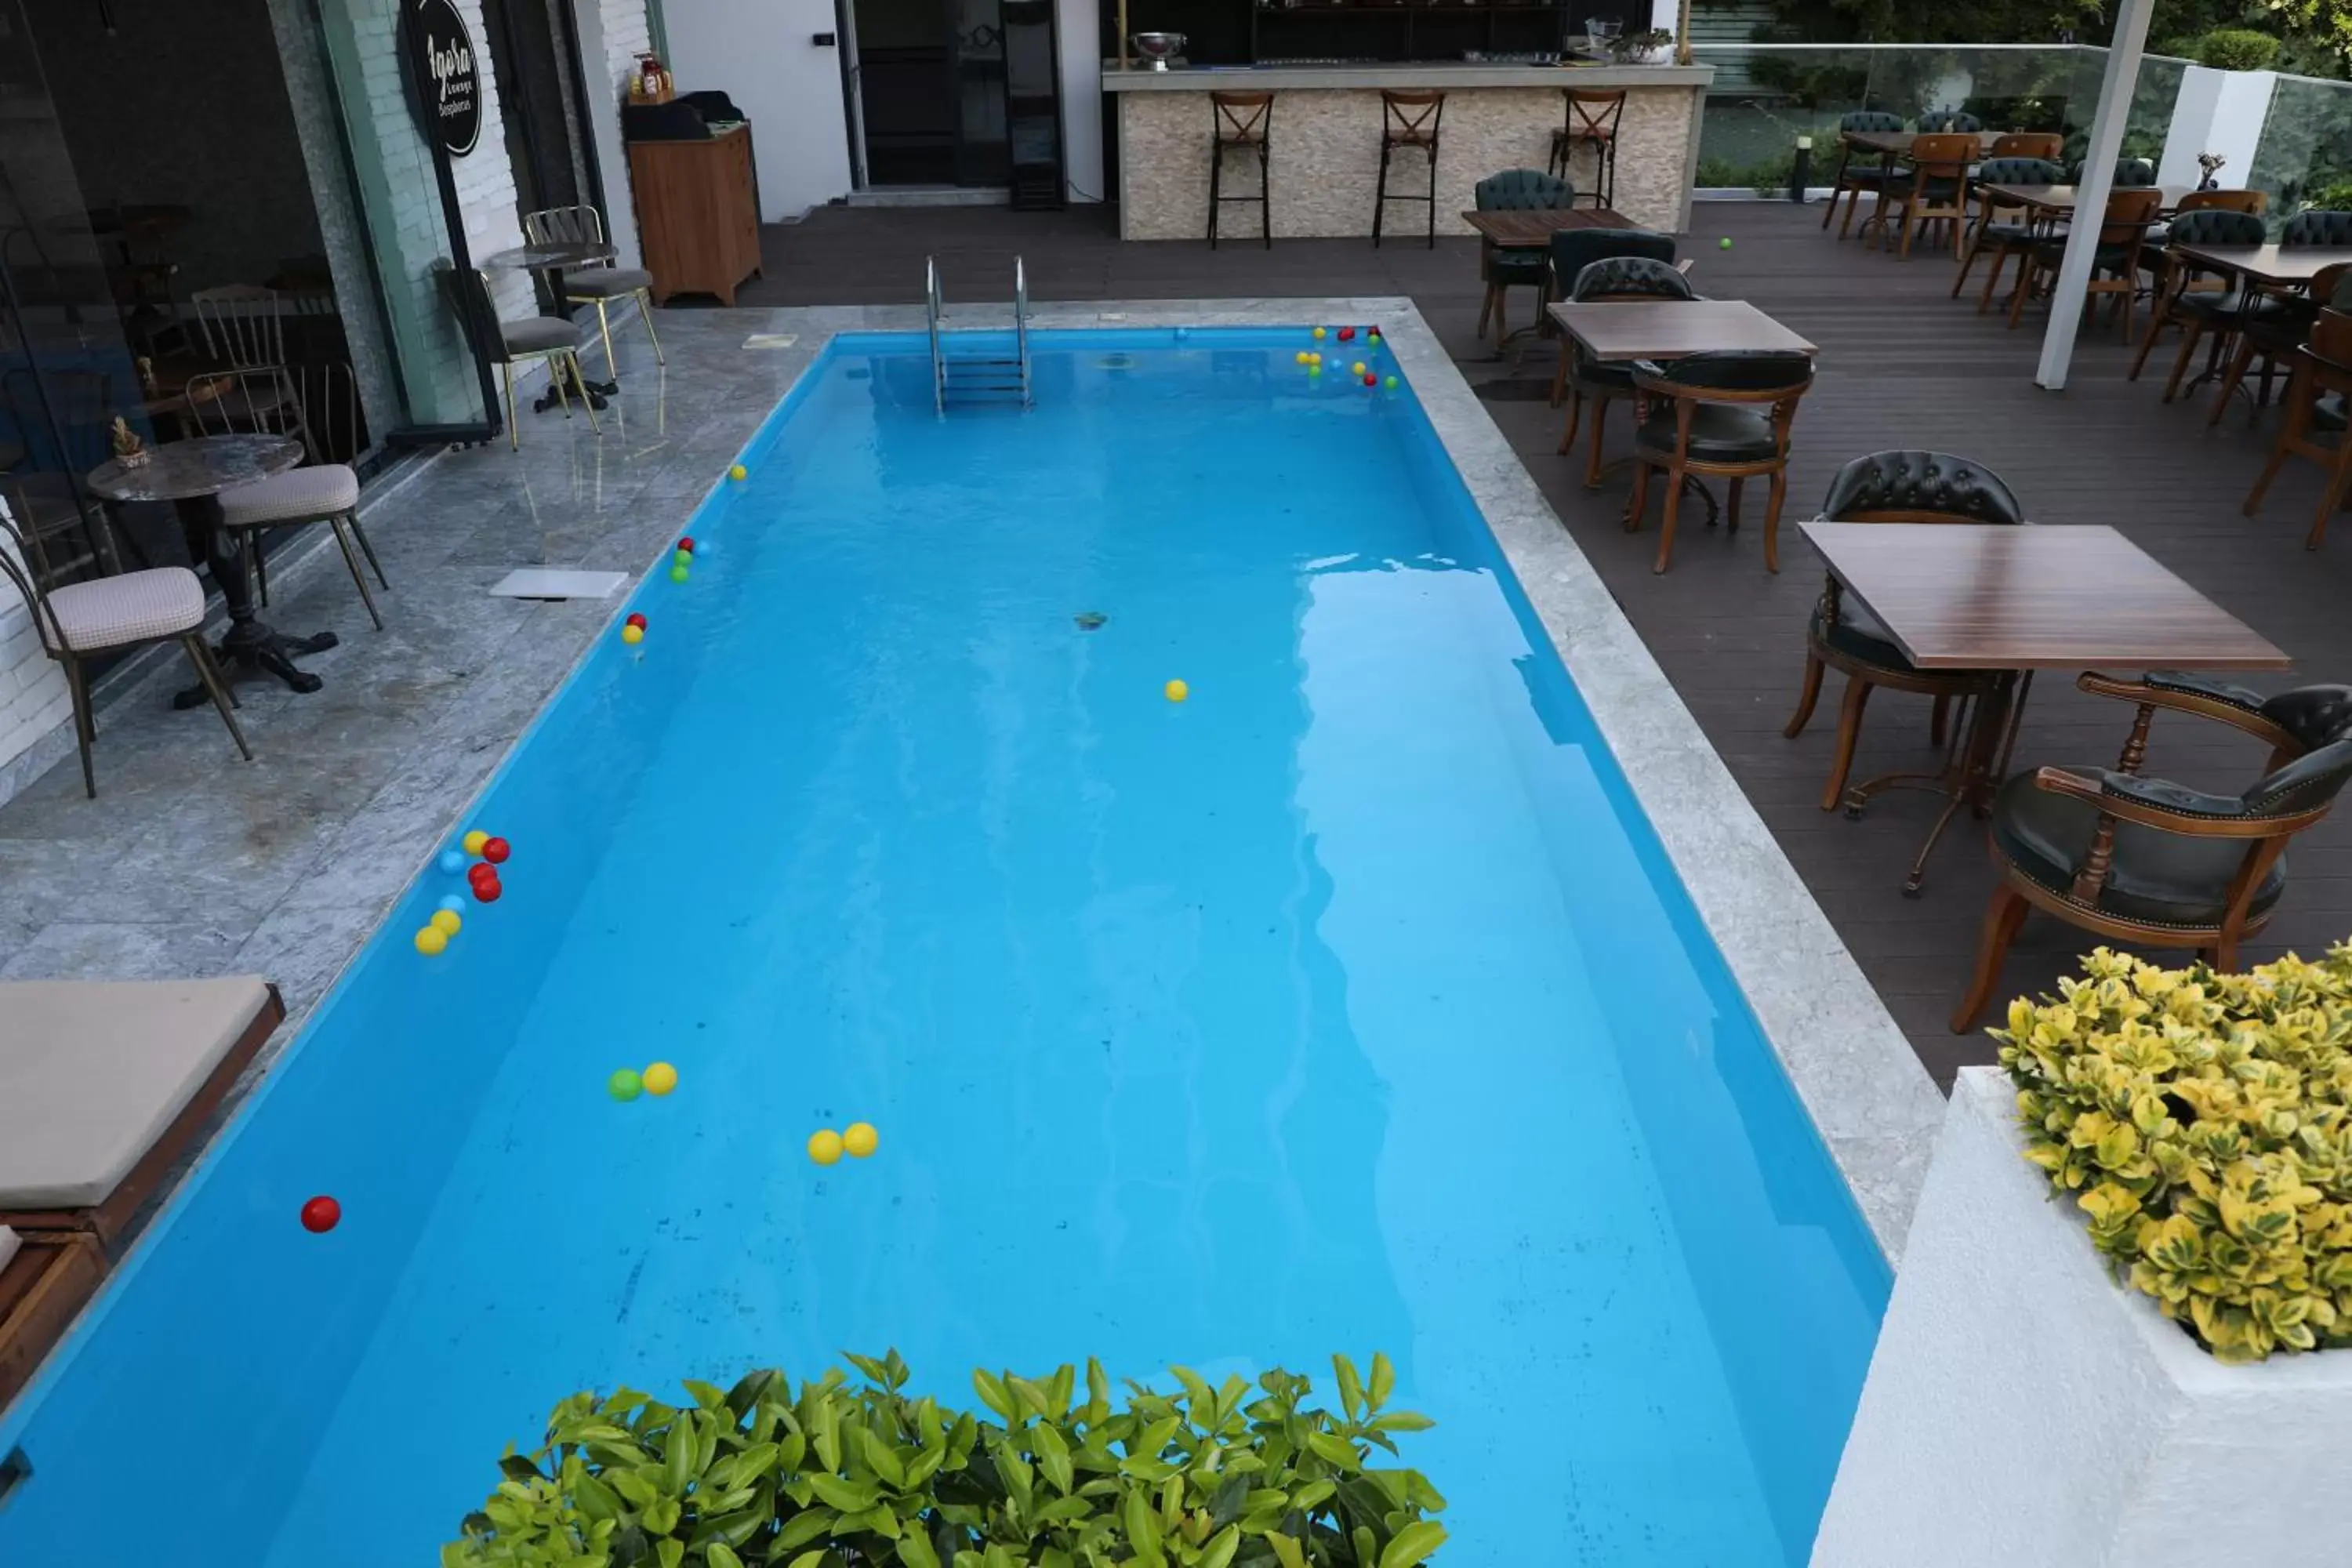 Swimming Pool in Loop Hotel Bosphorus İstanbul